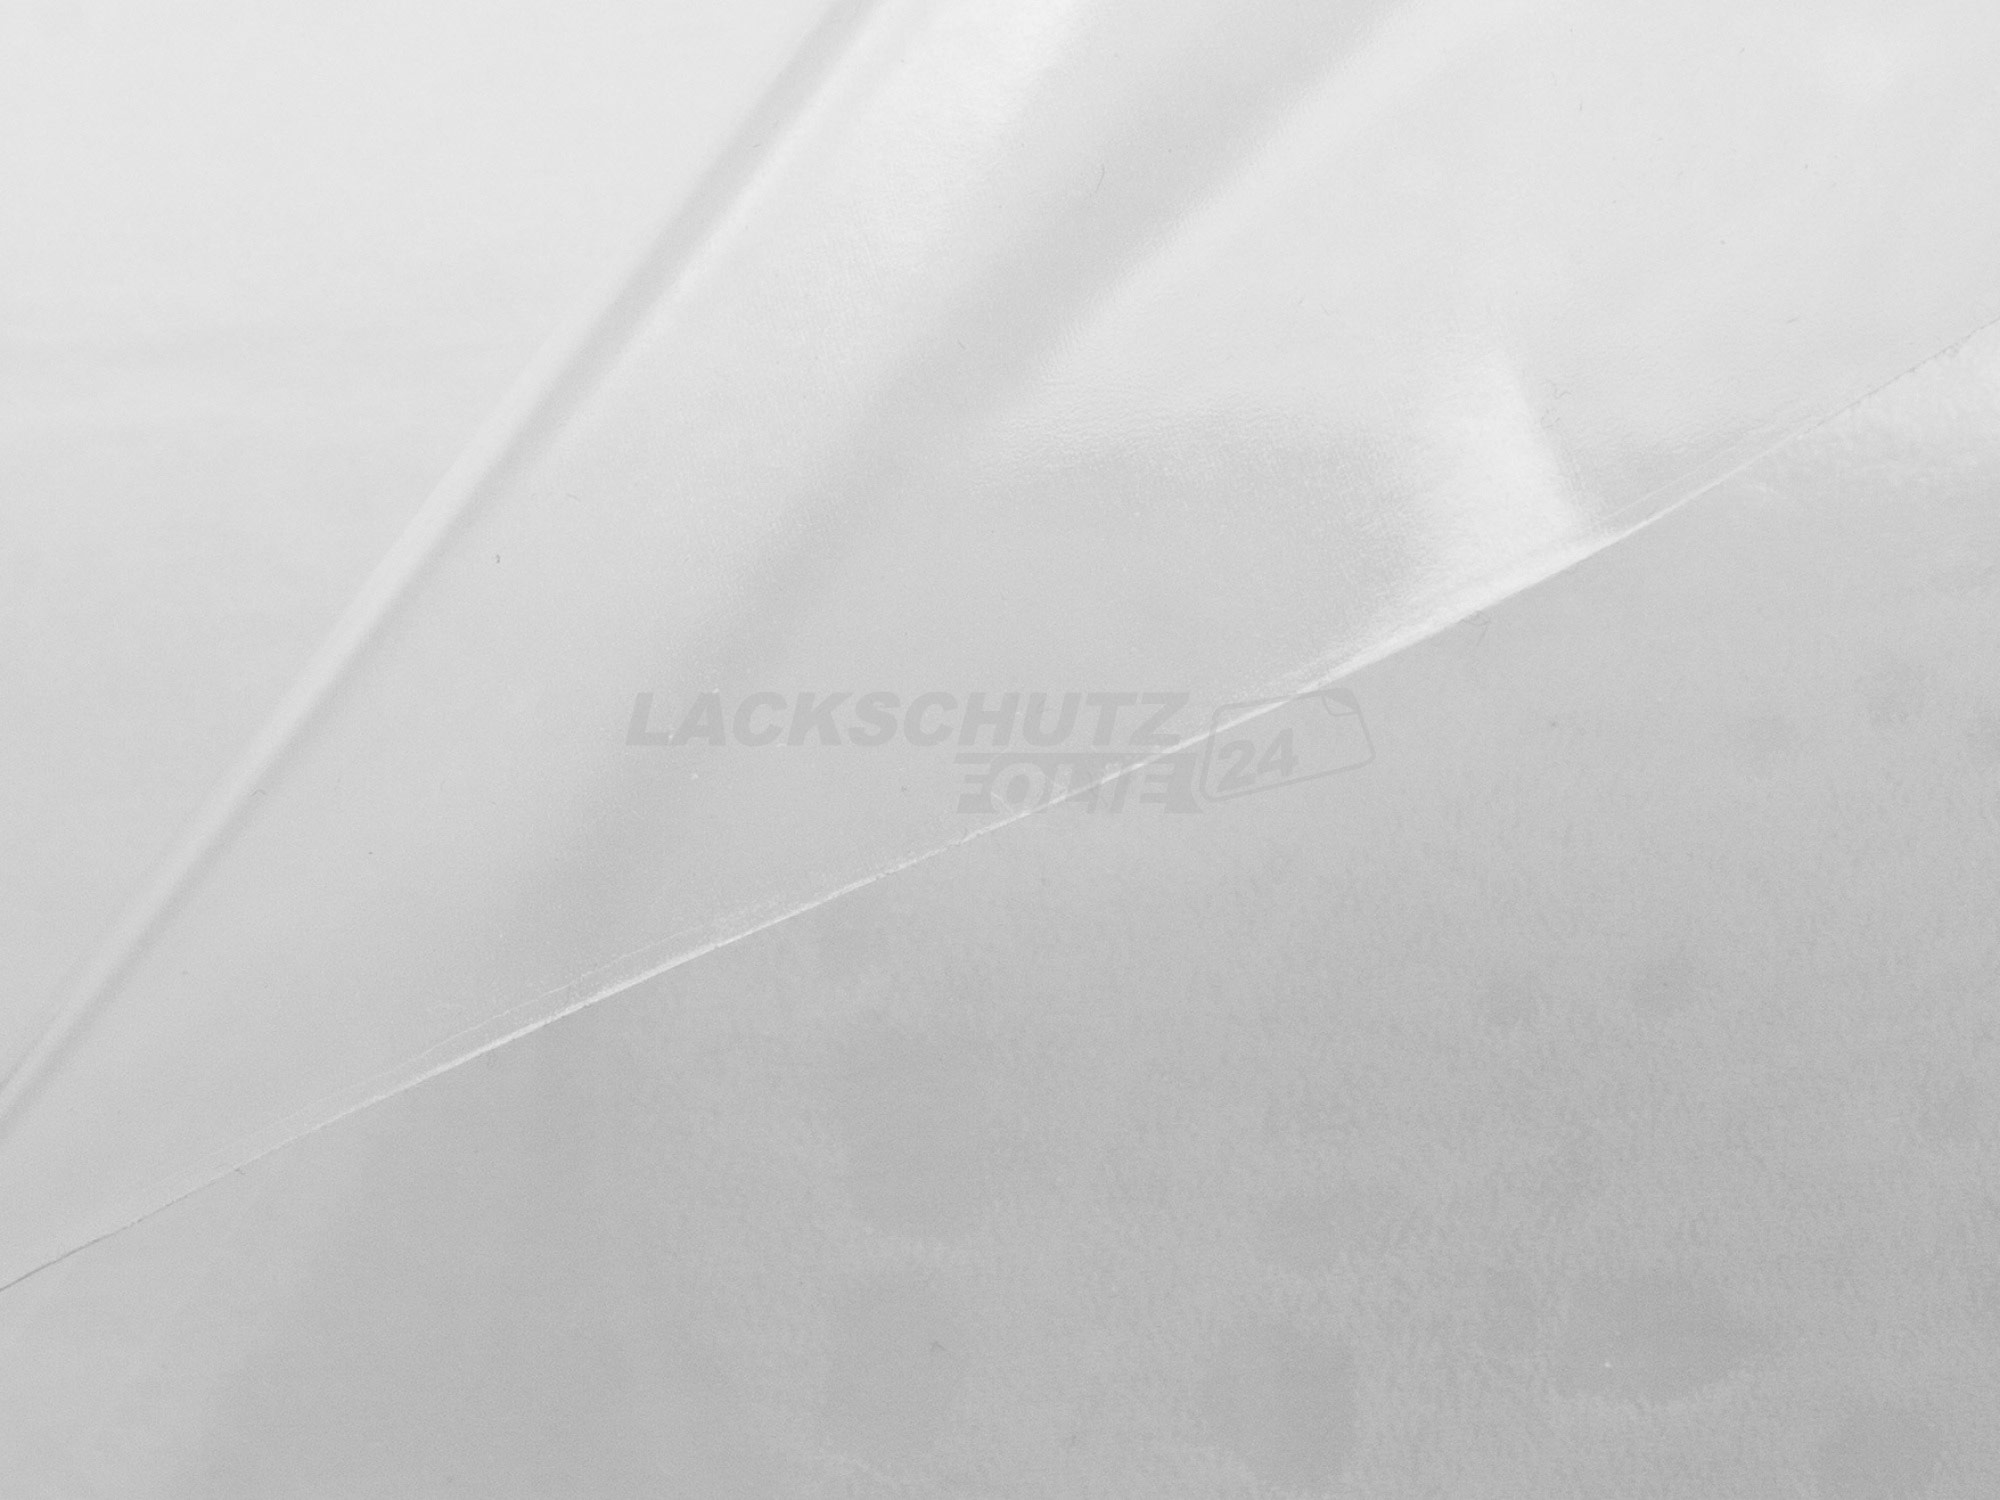 Ladekantenschutzfolie - Transparent Glatt Hochglänzend 240 µm stark für SsangYong Korando Typ C200, BJ 2010-2019